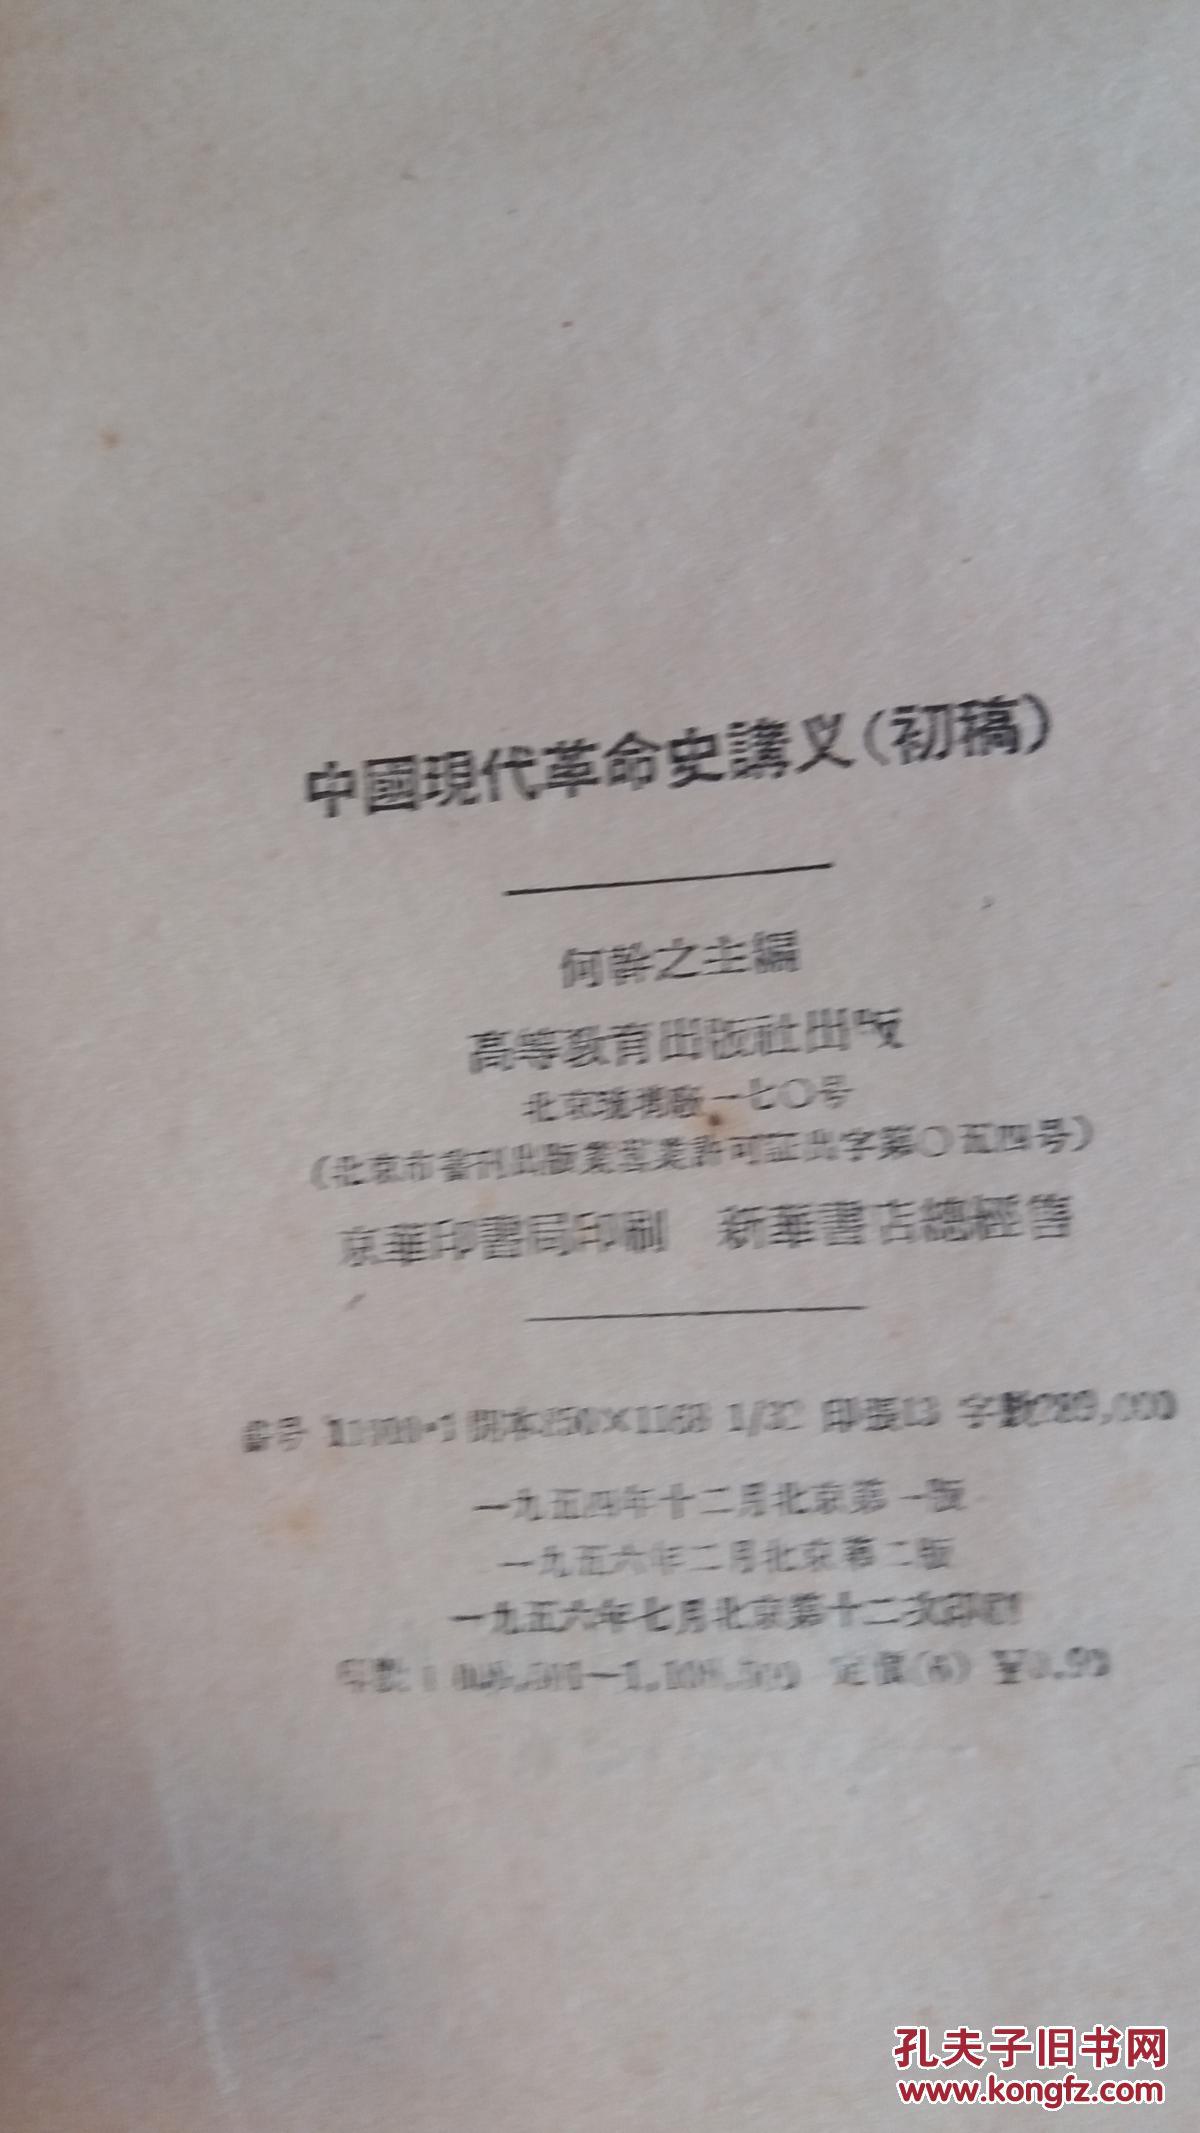 中国现代革命史讲义 （初稿）繁体竖版 何干之 高等教育出版社 1954年